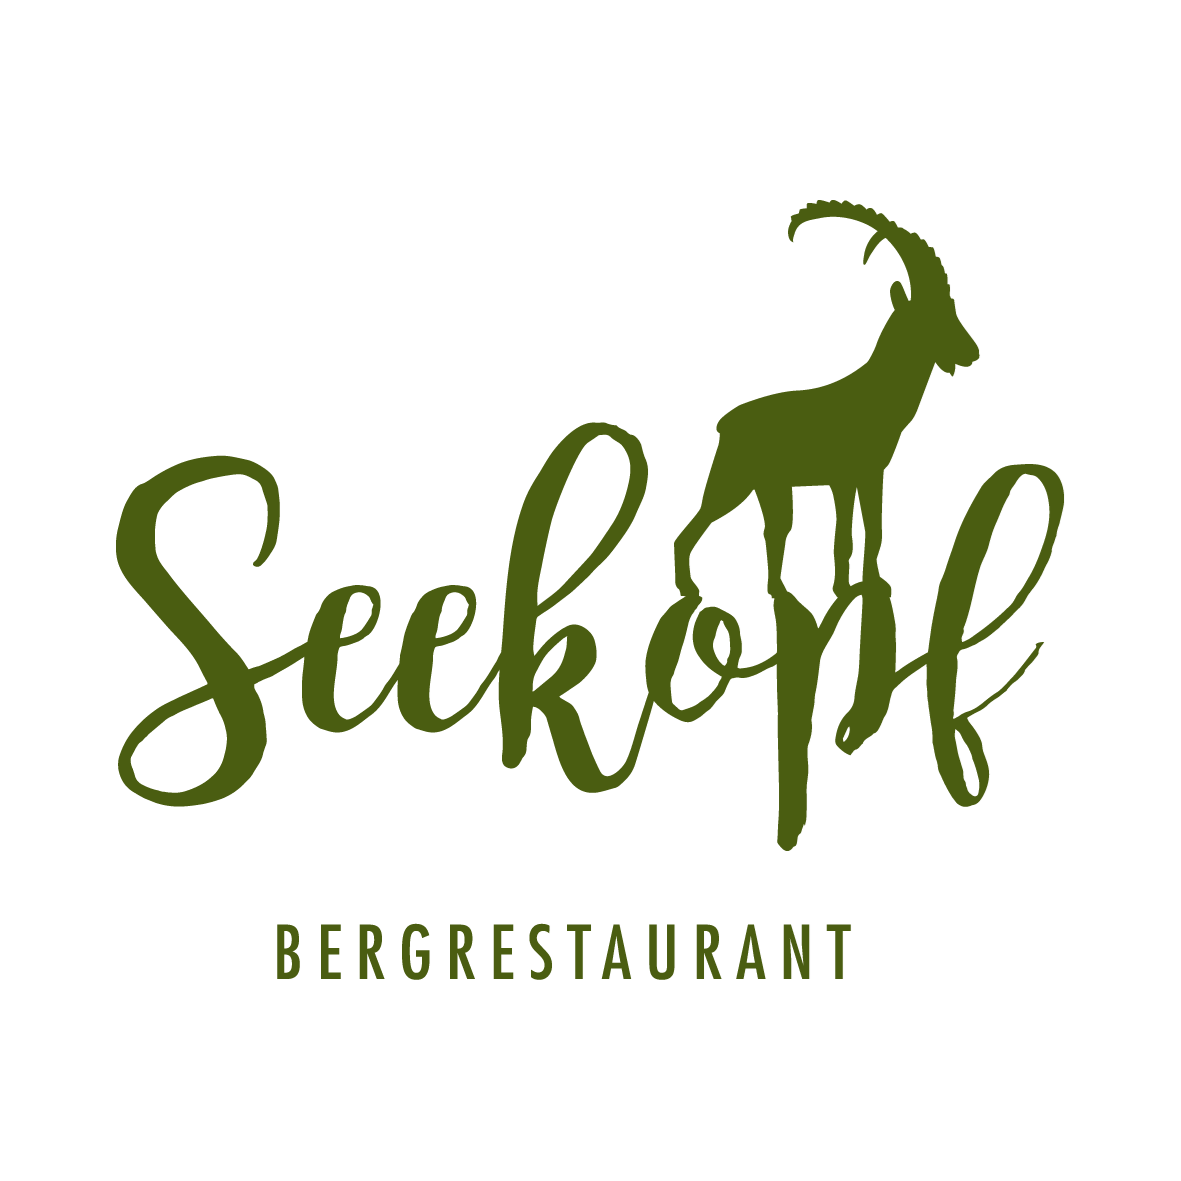 Seekopf, Bergrestaurant